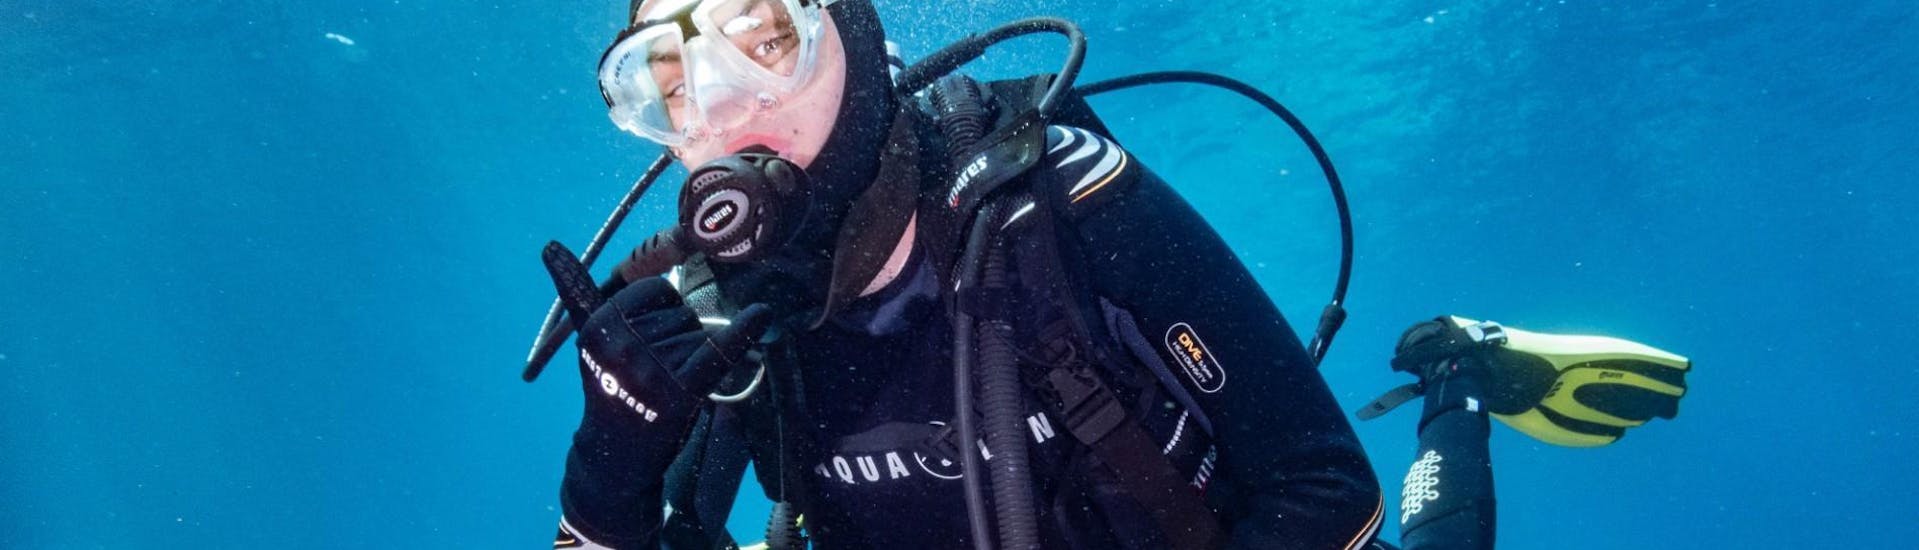 Un participant à la plongée sous-marine à Santa Pola pendant une sortie proposée par Dive Academy Santa Pola.